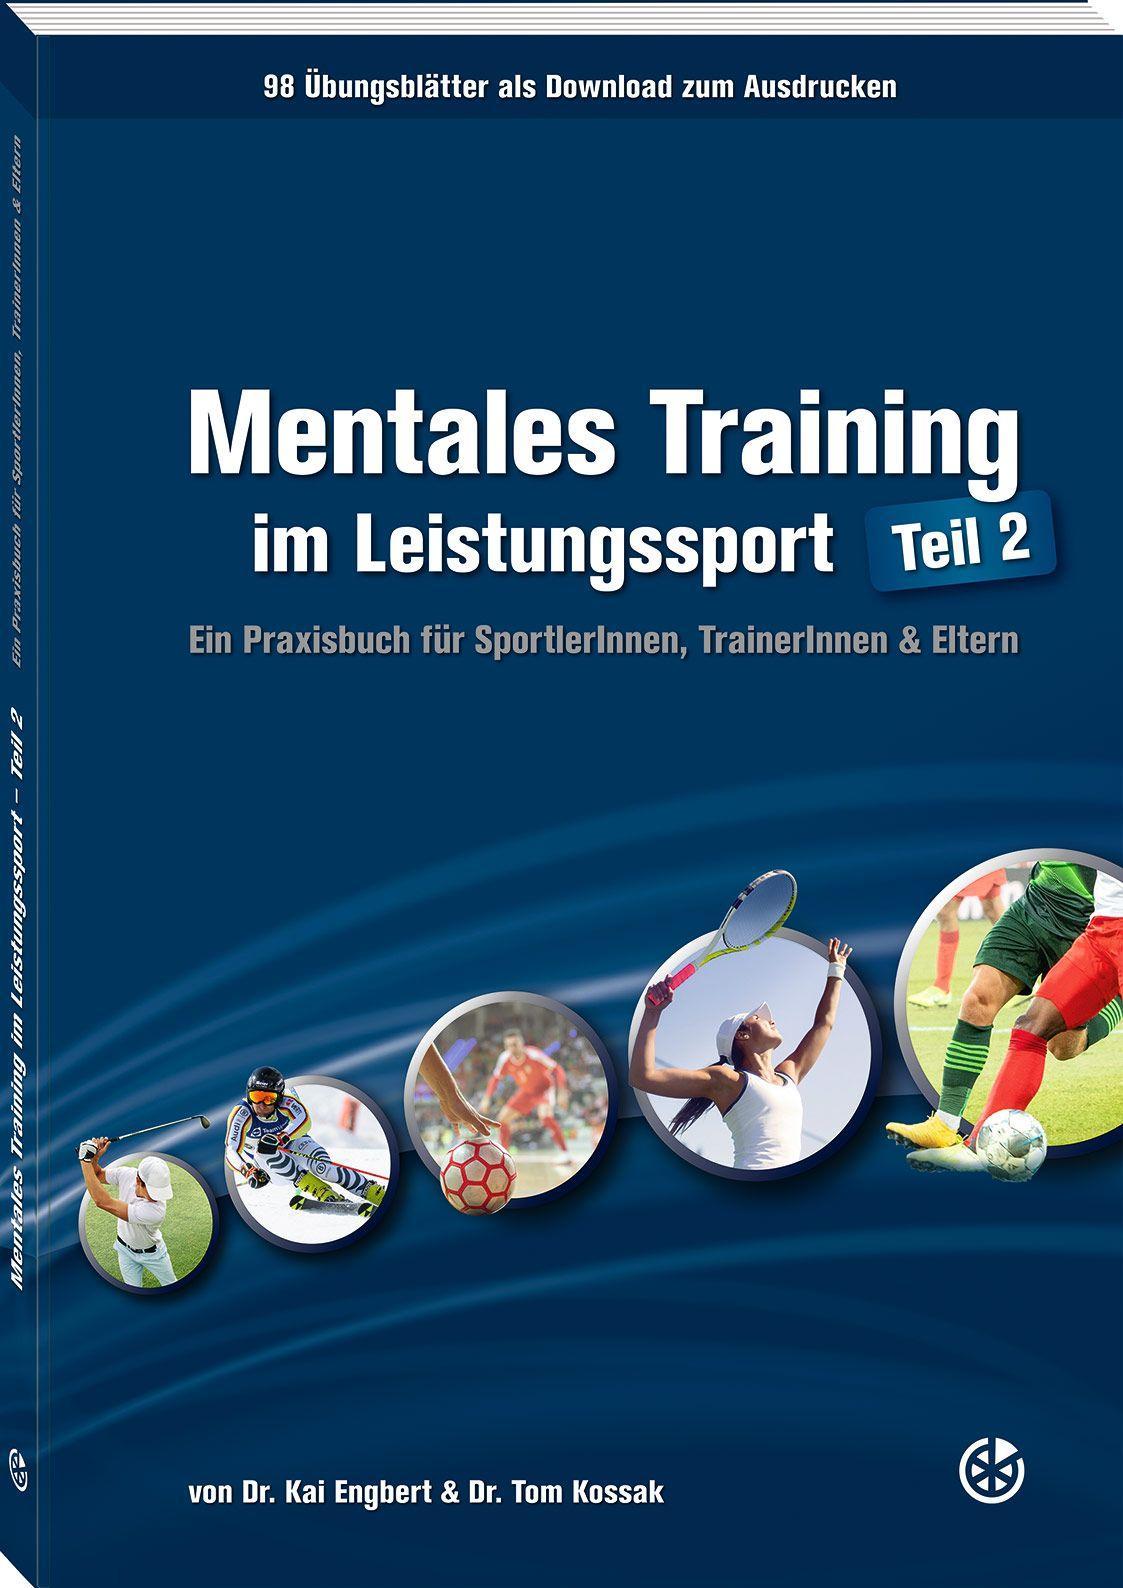 Mentales Training im Leistungssport - Teil 2 Ein Praxisbuch für SportlerInnen, TrainerInnen & Eltern